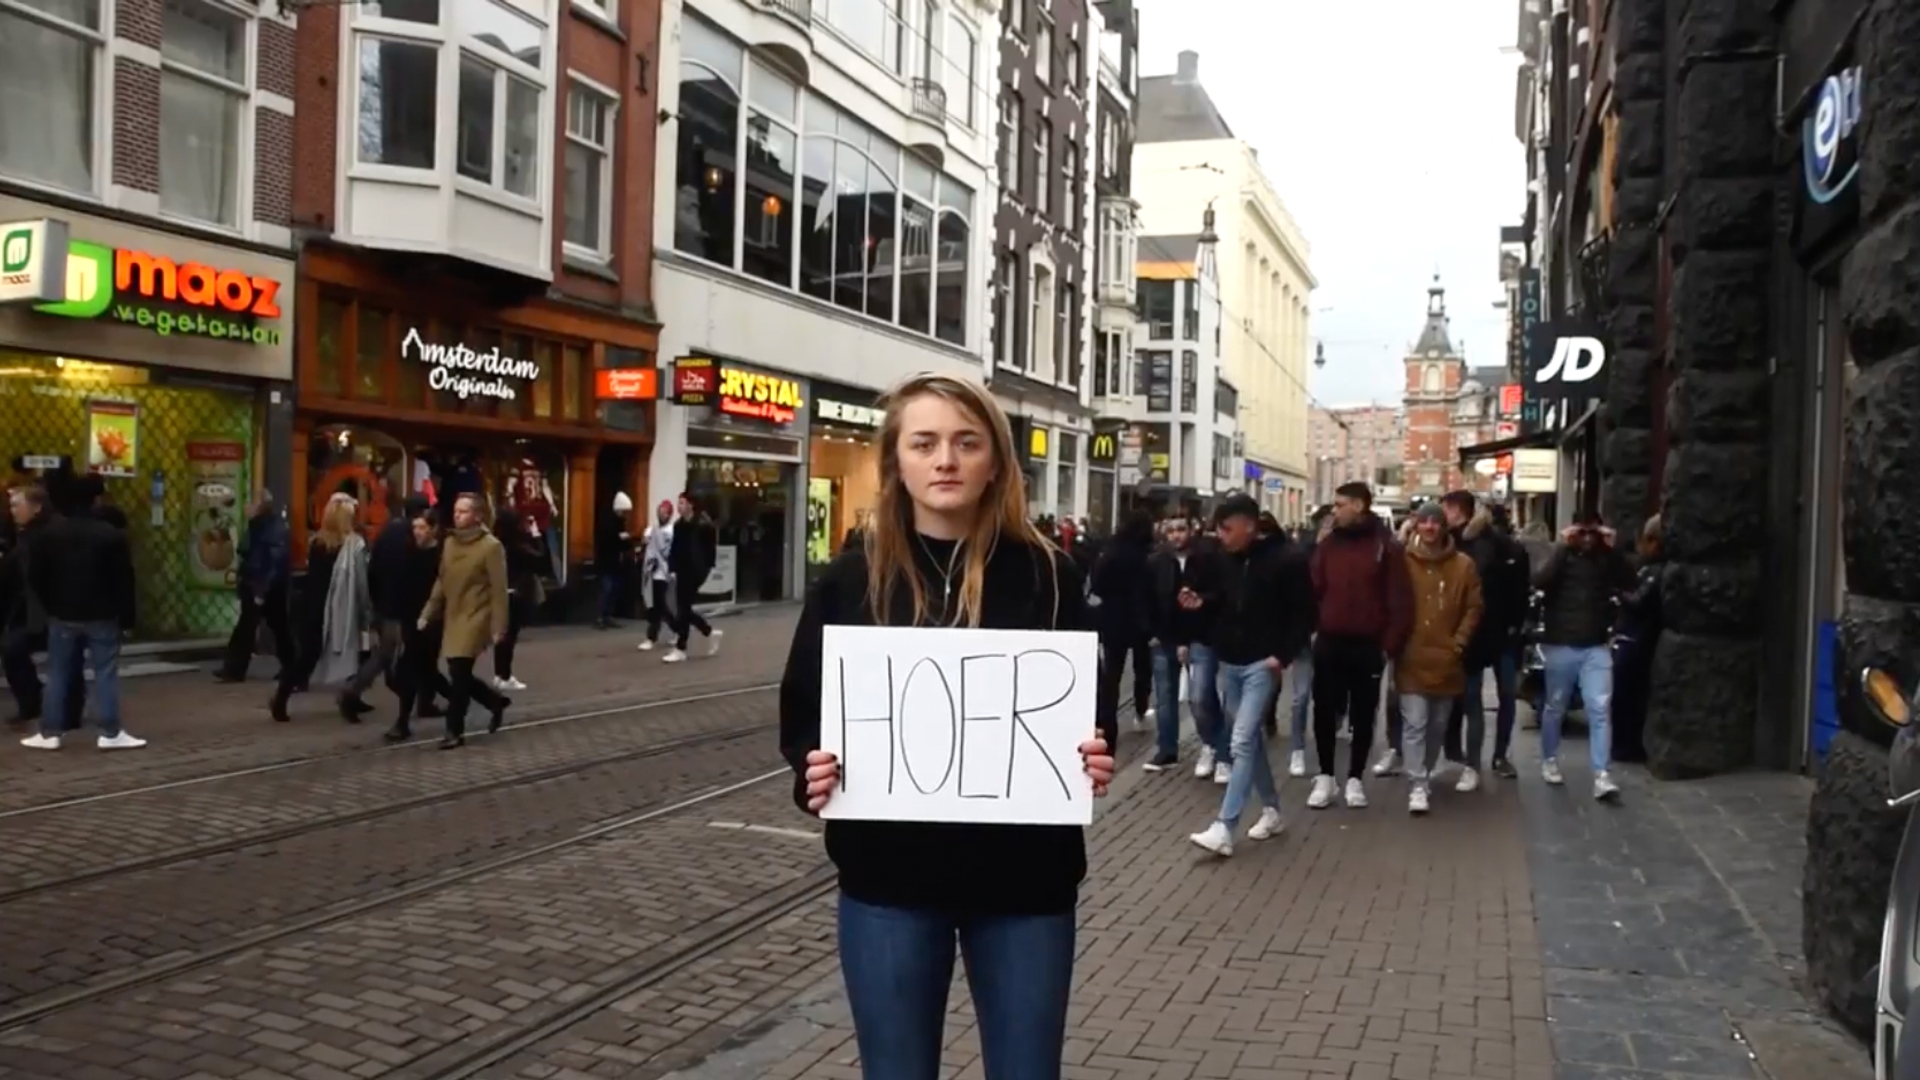 Milou Deelen in video over slutshaming